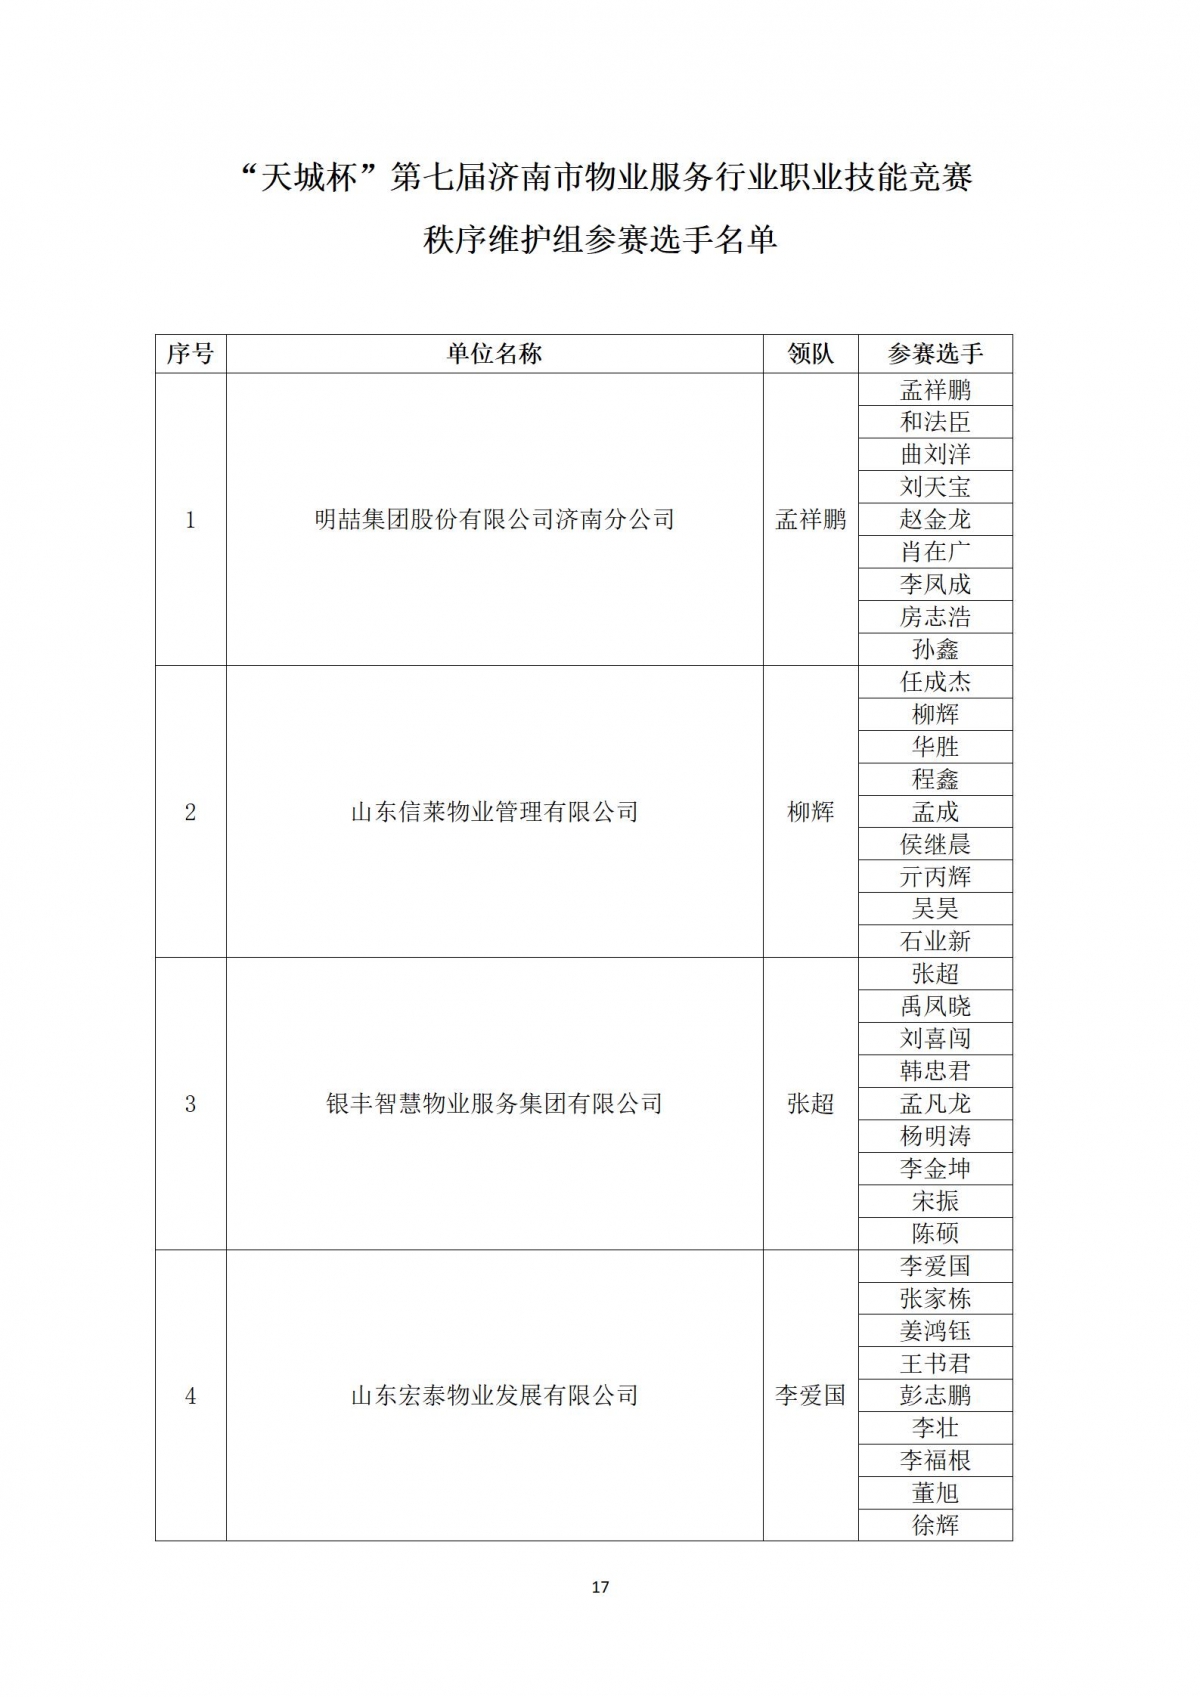 关于“天城杯”第七届济南市物业服务行业职业技能竞赛选手名单的公示_17